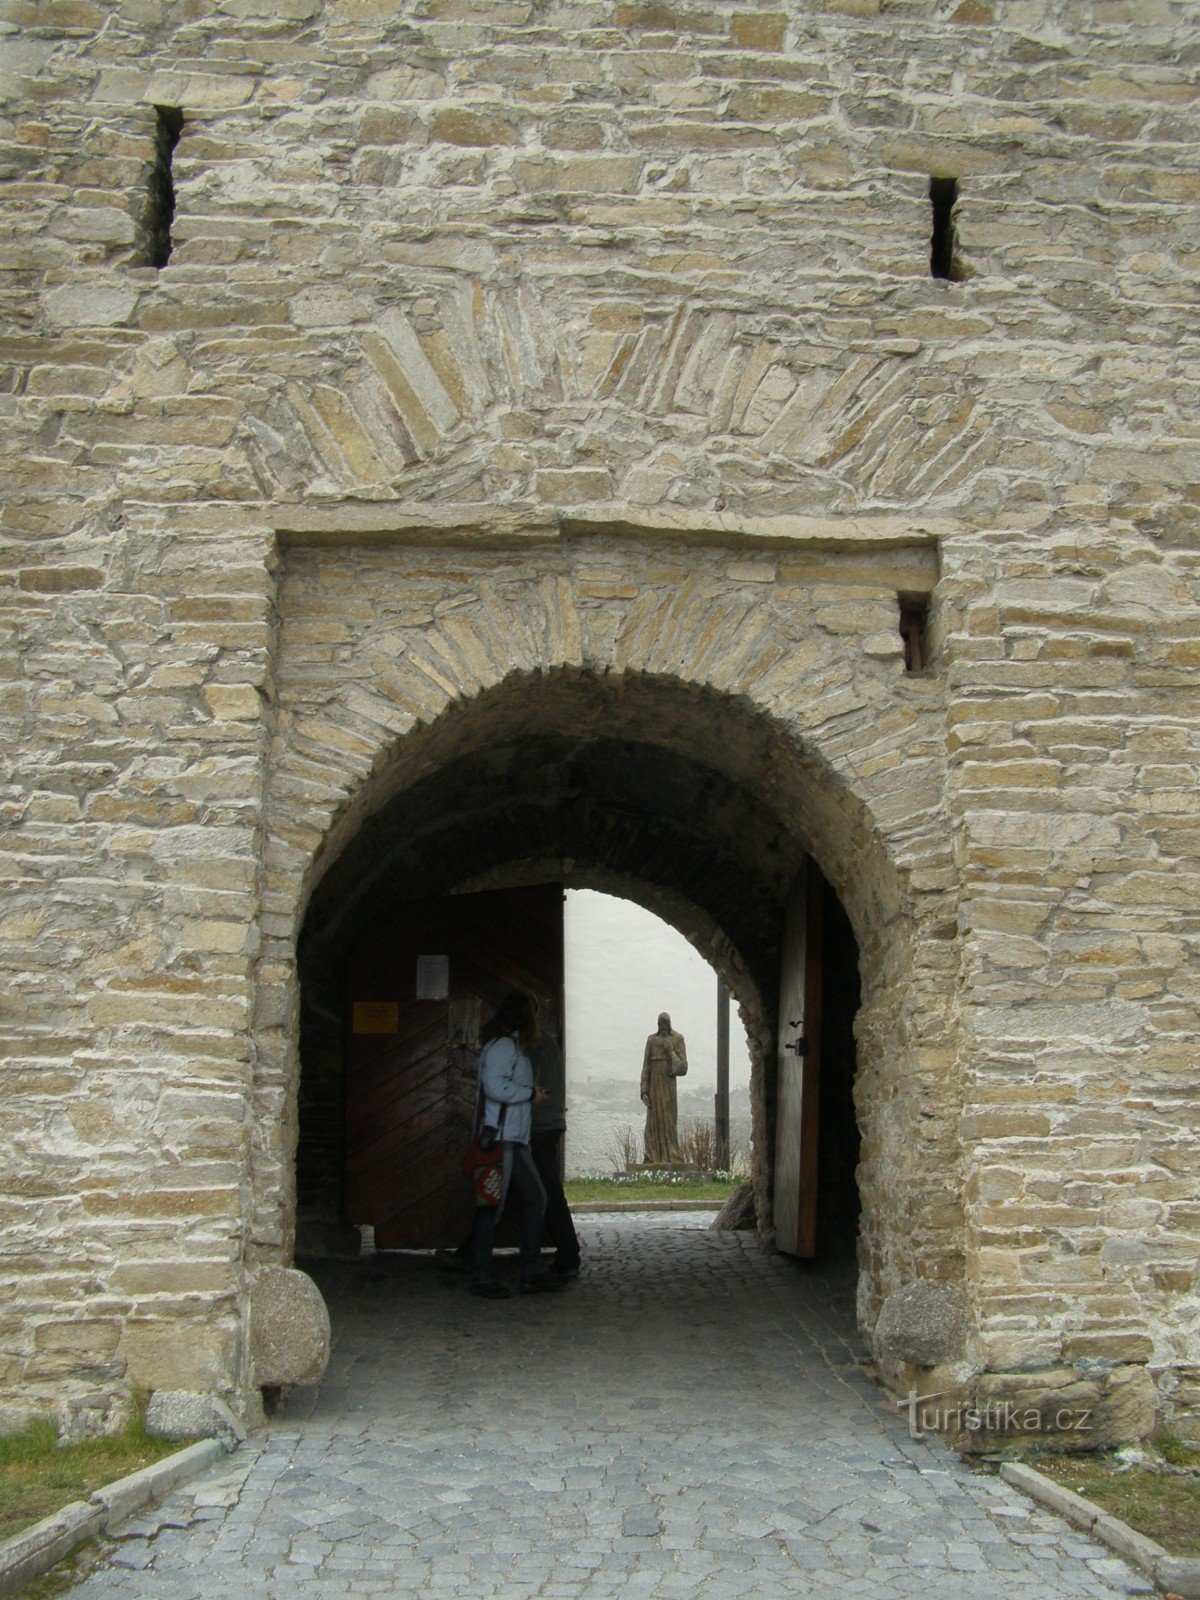 Velká Bíteš - a town with a church fortress